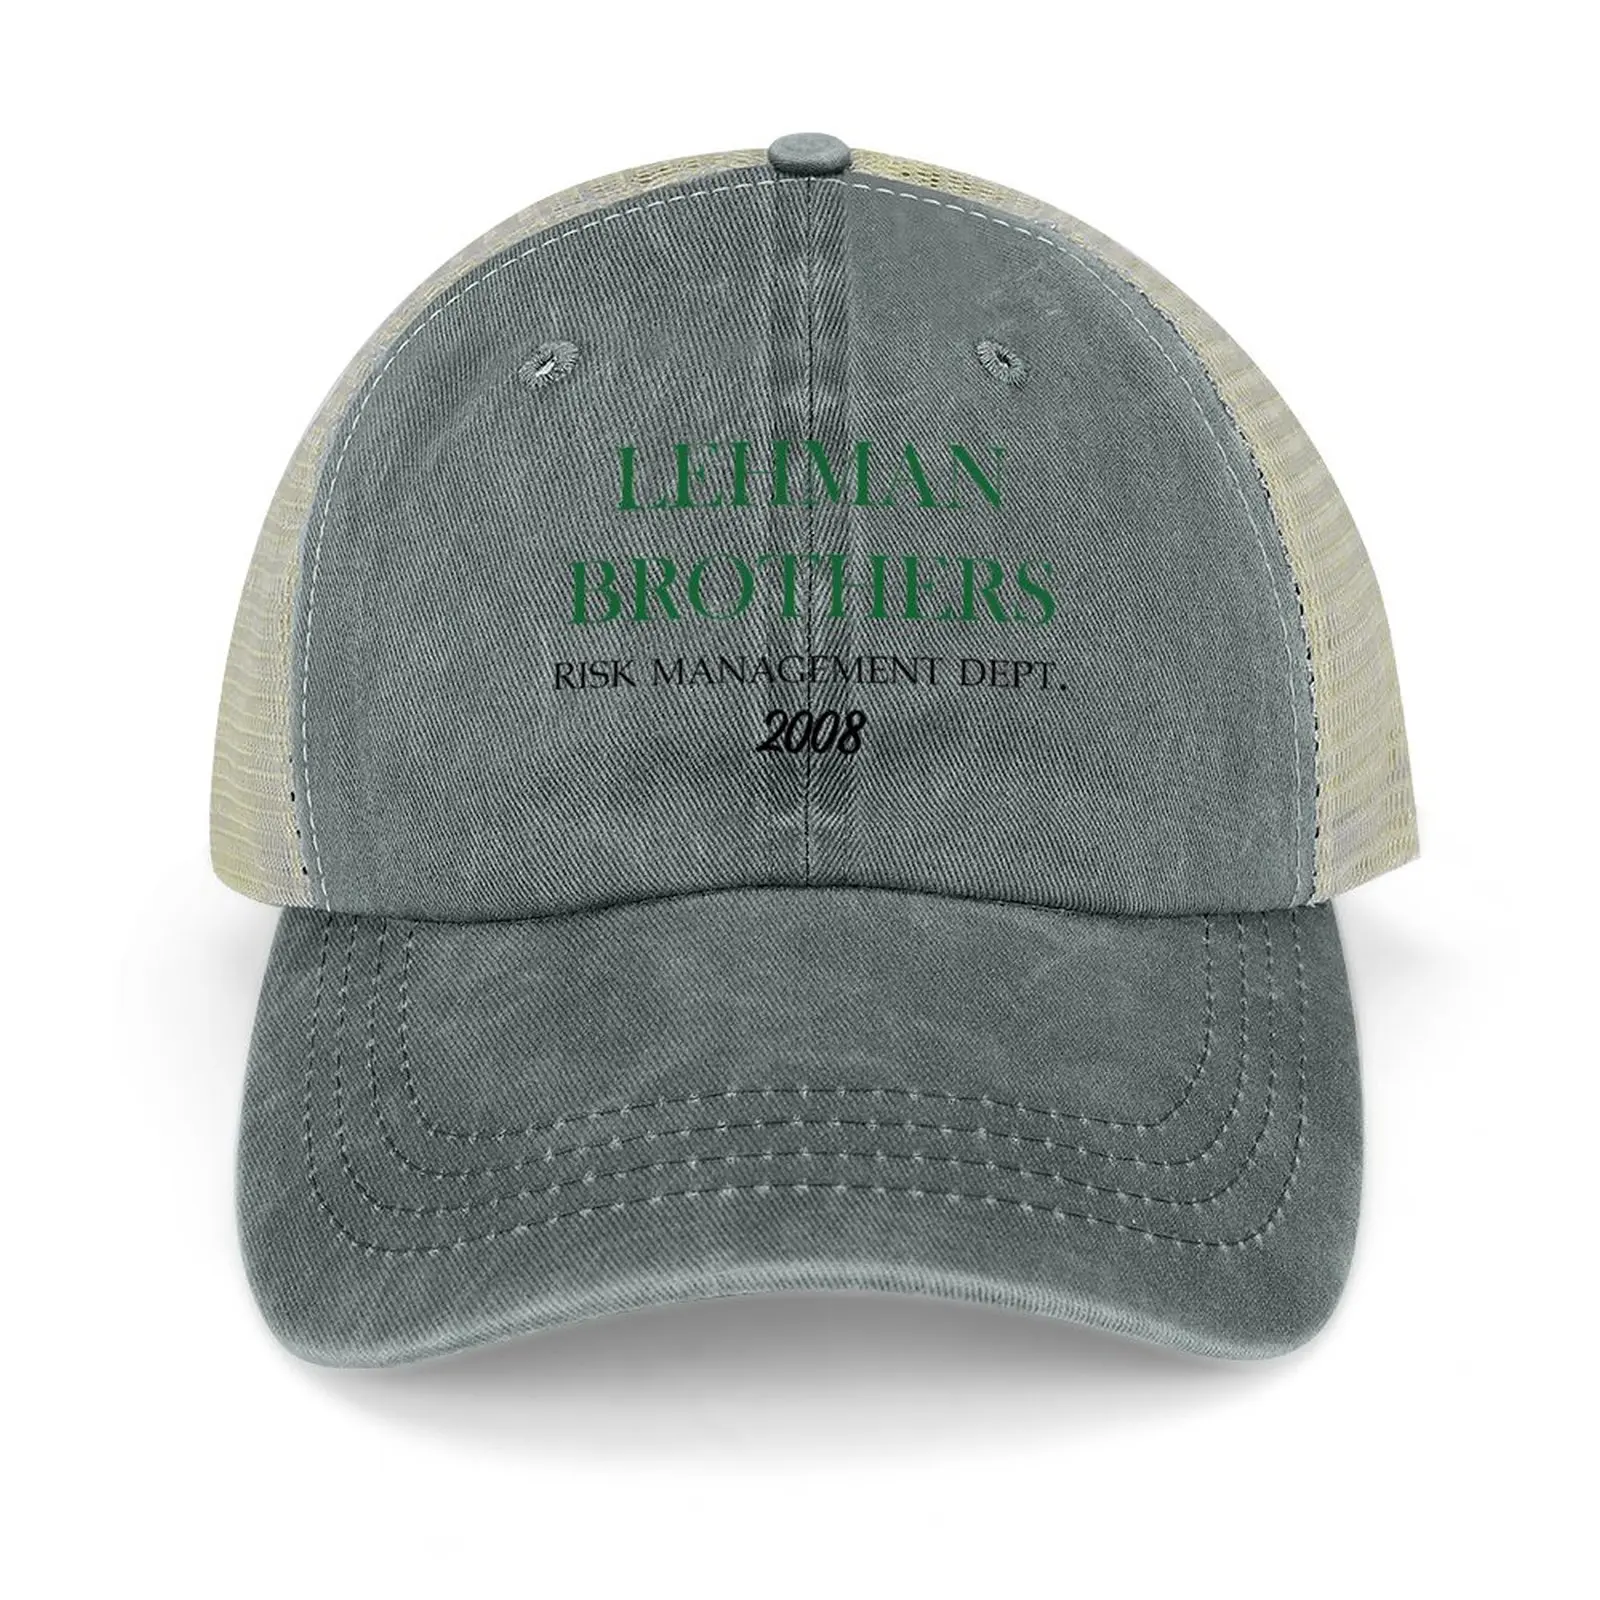 

Ковбойская шляпа lehman brothers с защитой от риска, шляпа джентльмена, Детская шляпа, Пляжная женская шляпа для прогулок, Мужская